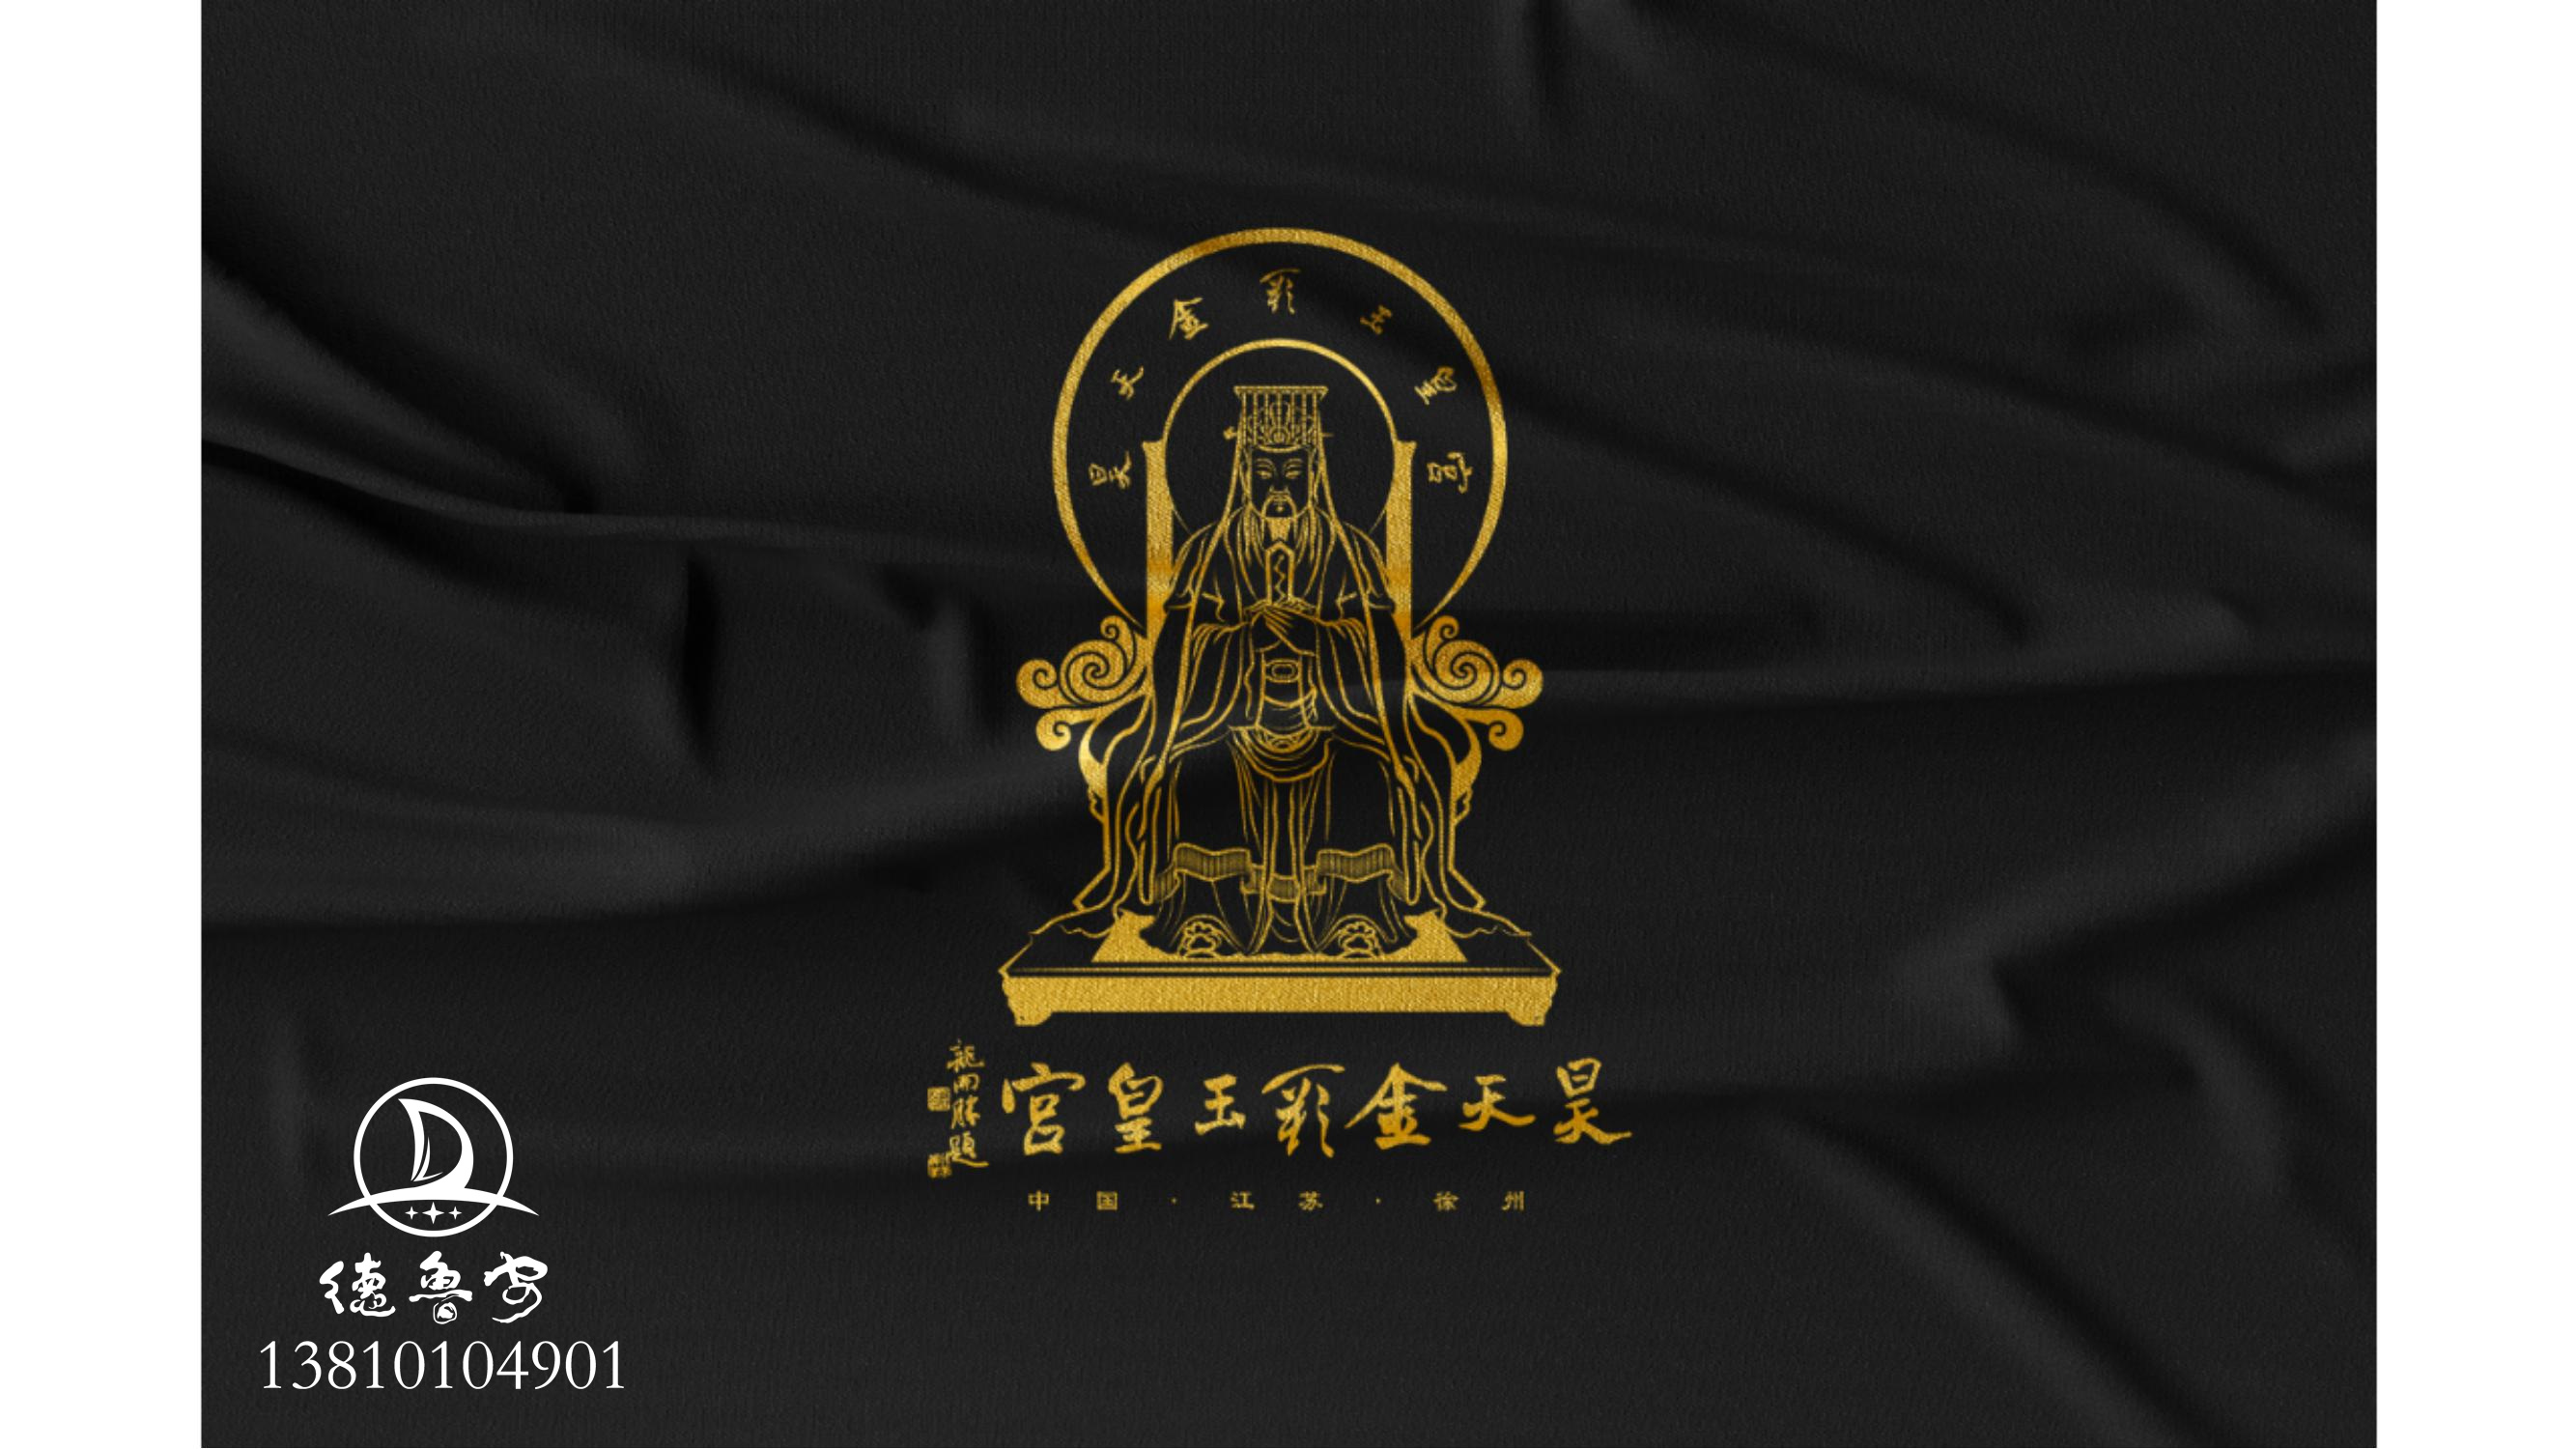 玉皇宫 logo定稿方案_29.jpg